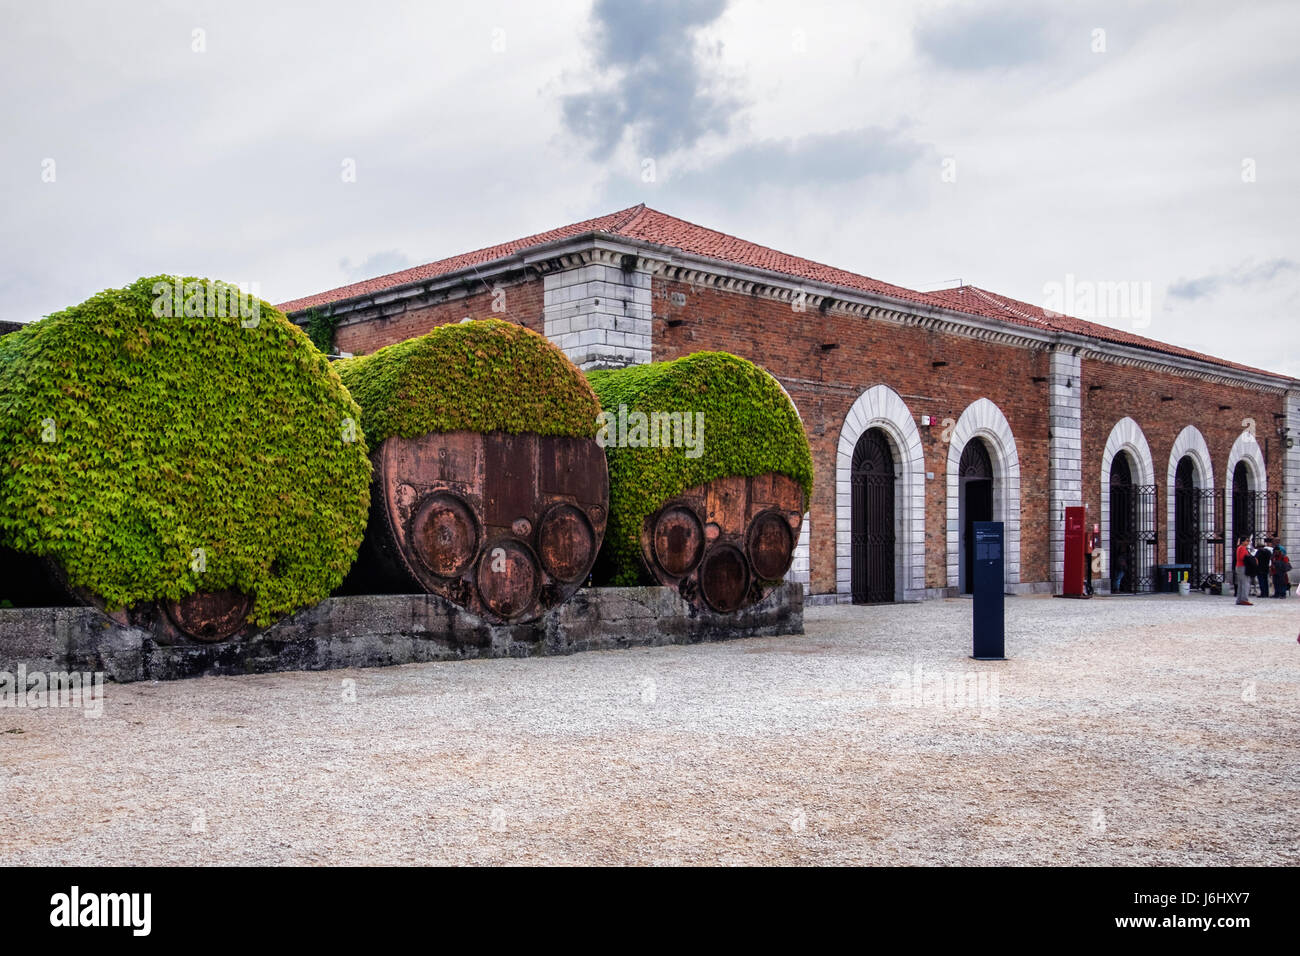 Hafen von Venedig, Castello, Arsenale. Industrielle rostigen alten Eisen Fass Behälter abgedeckt Efeu neben historischen alten Backsteingebäude Gehäuse Biennale Stockfoto